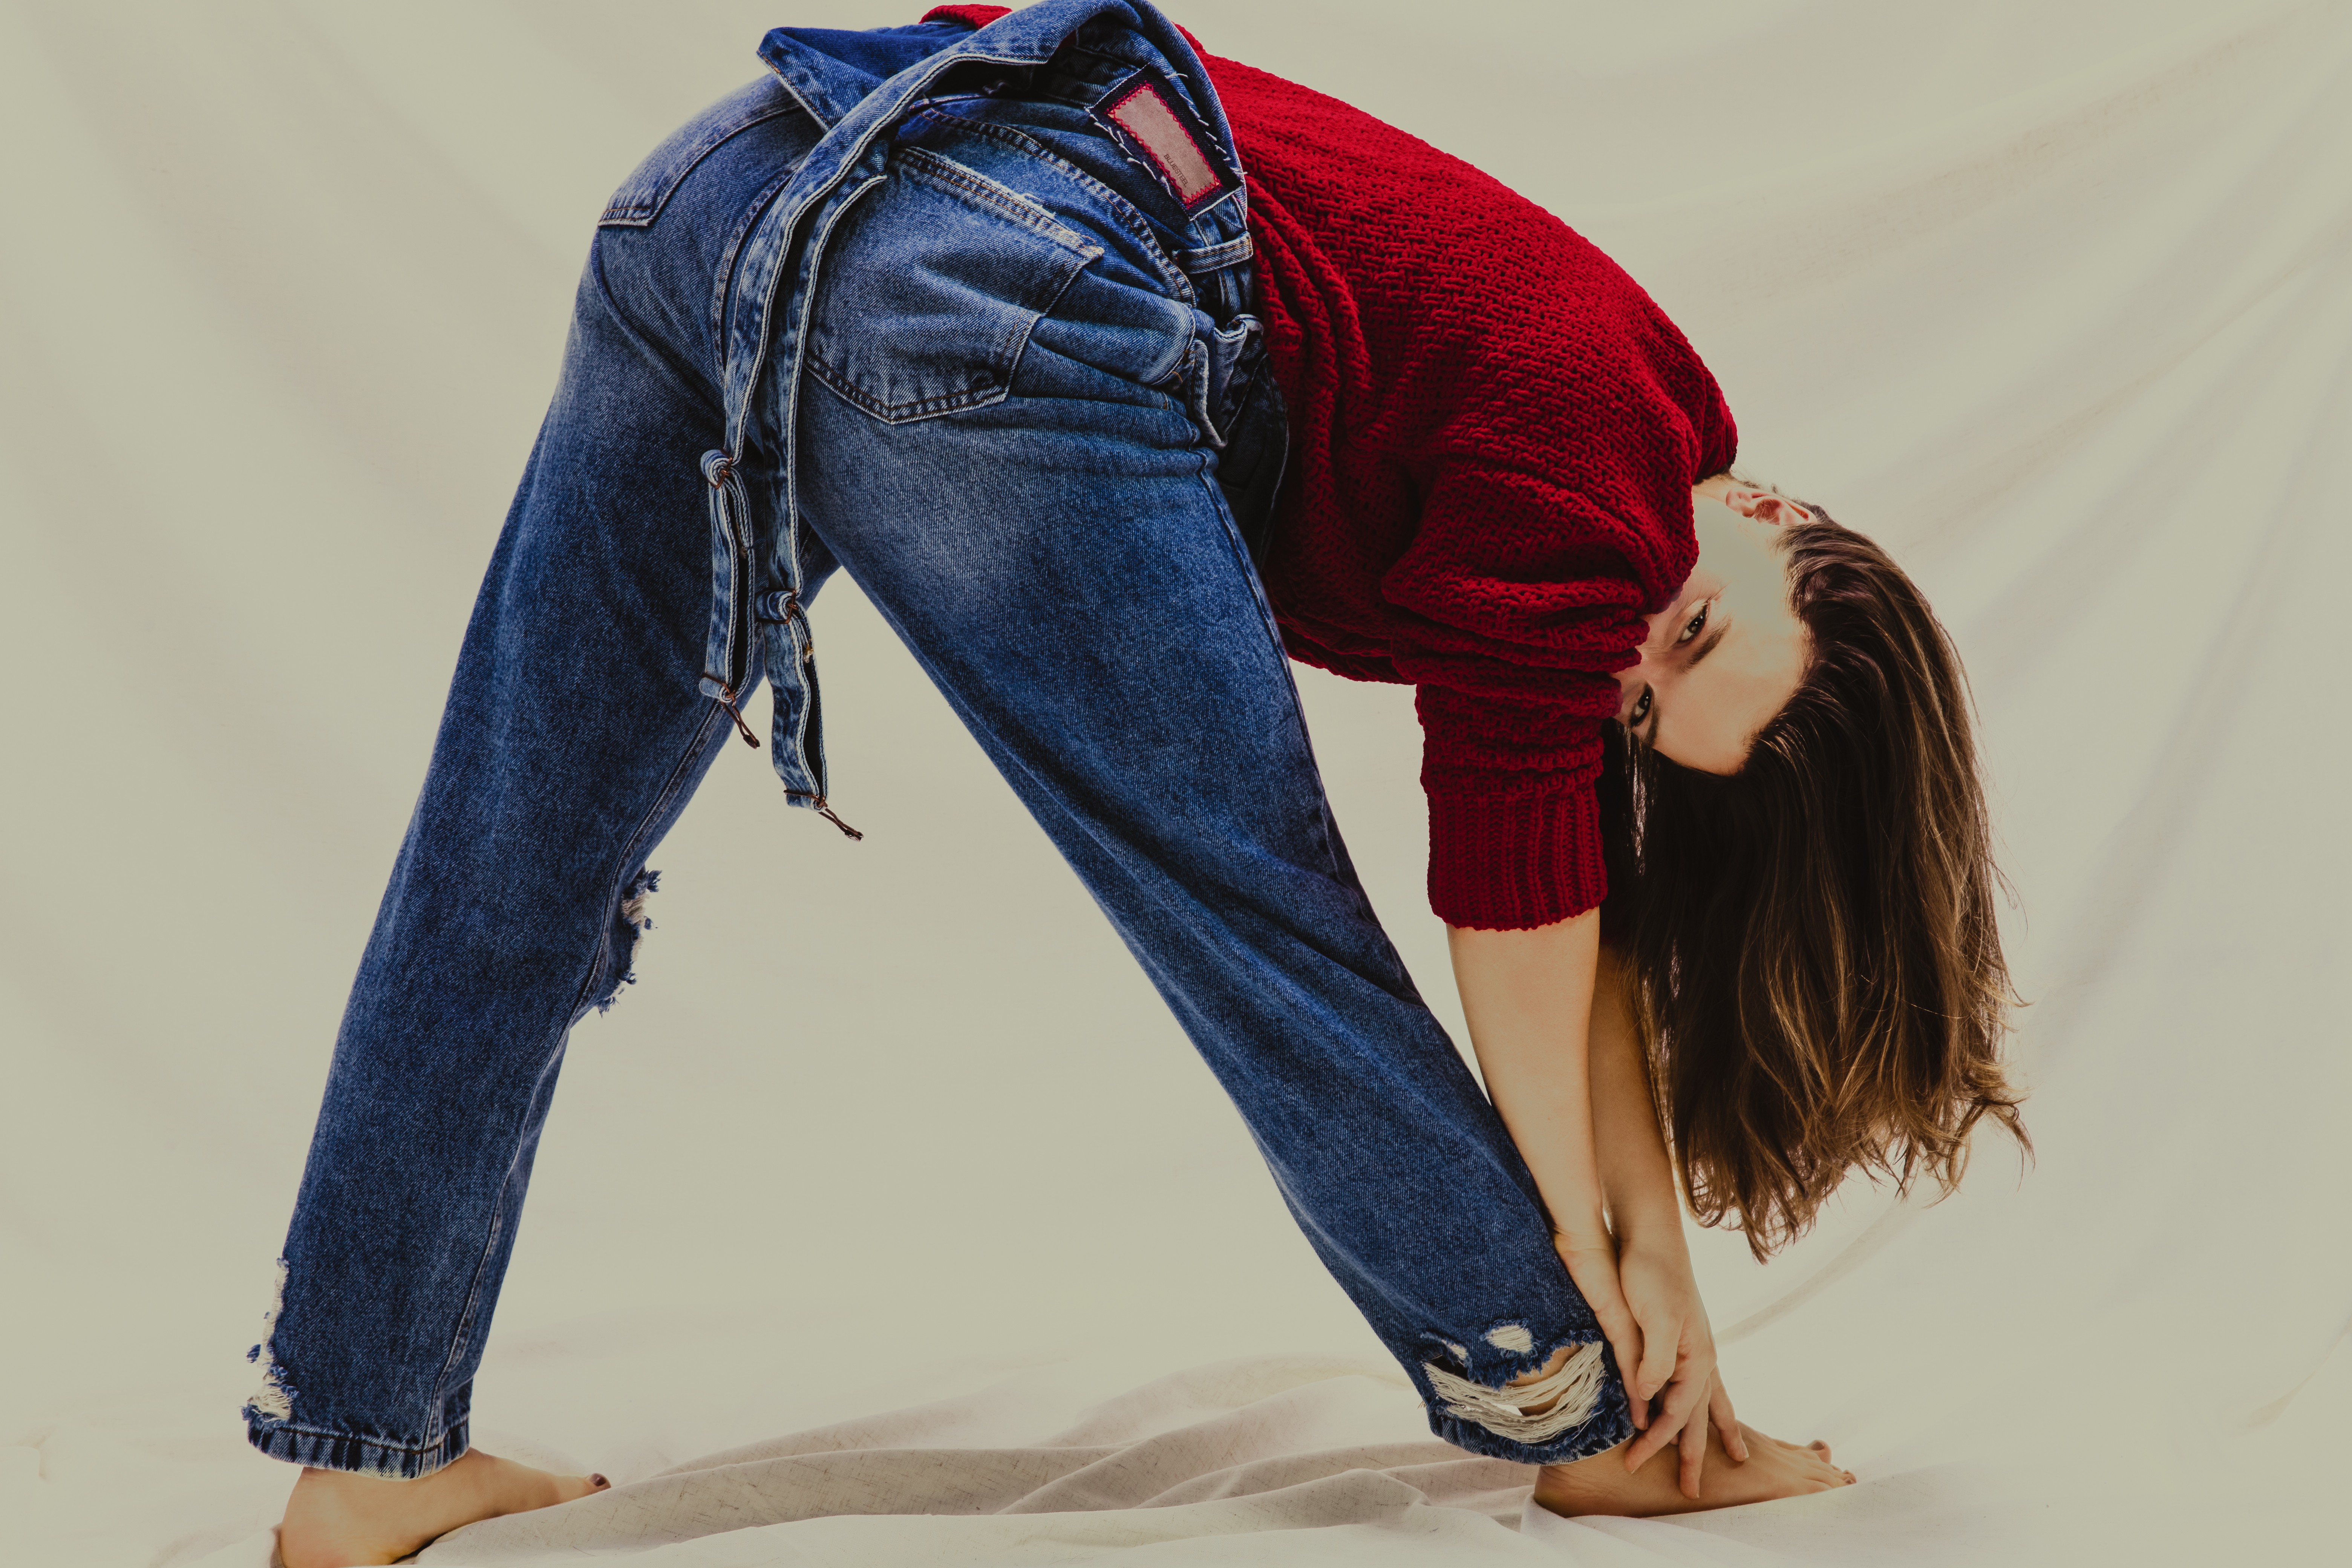 Alice Wegmann veste a linha Re Jeans da Renner, que tem menor impacto socioambiental (Foto: Divulgação)